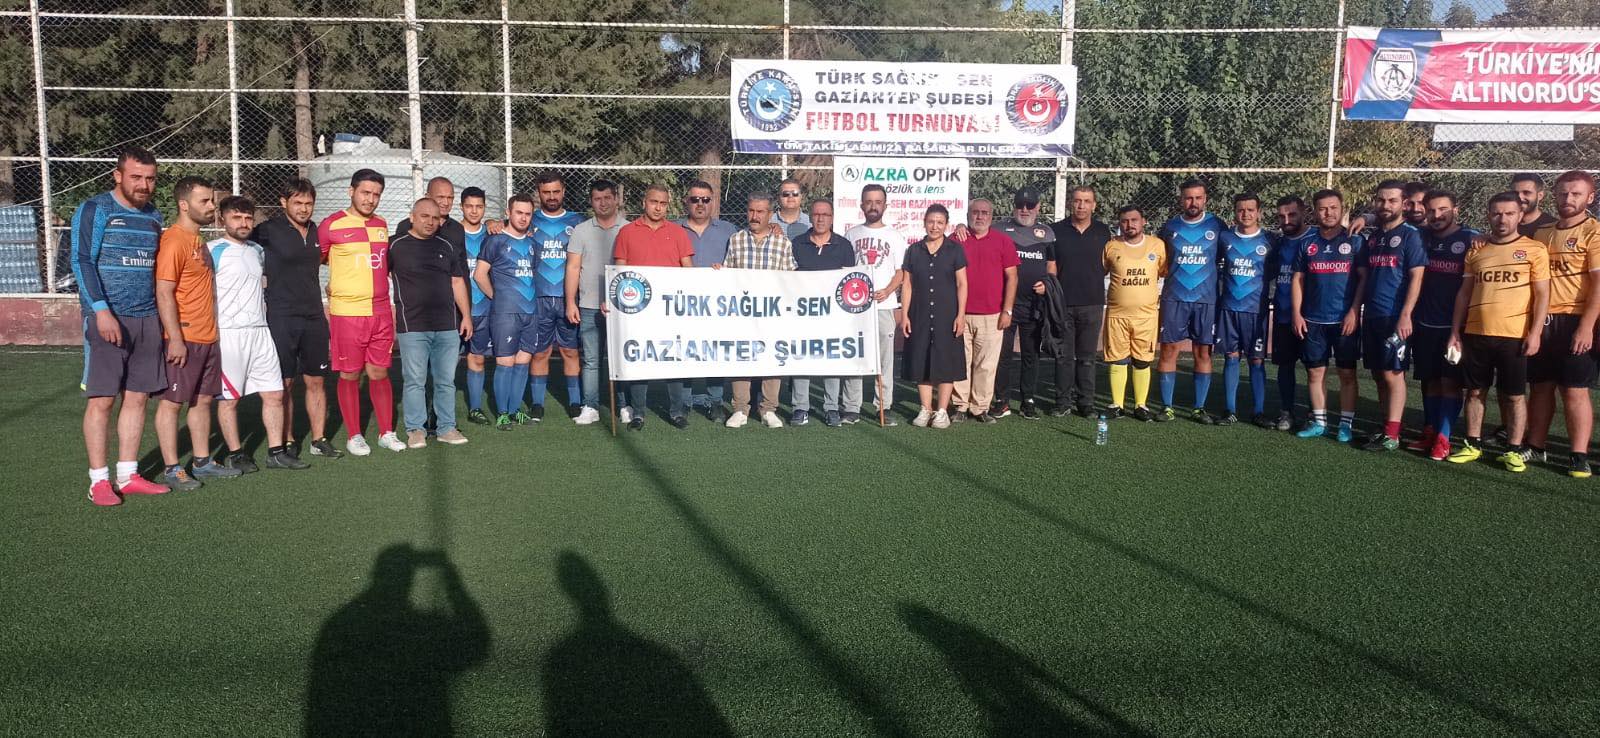 Türk Sağlık-Sen’den futbol turnuvası